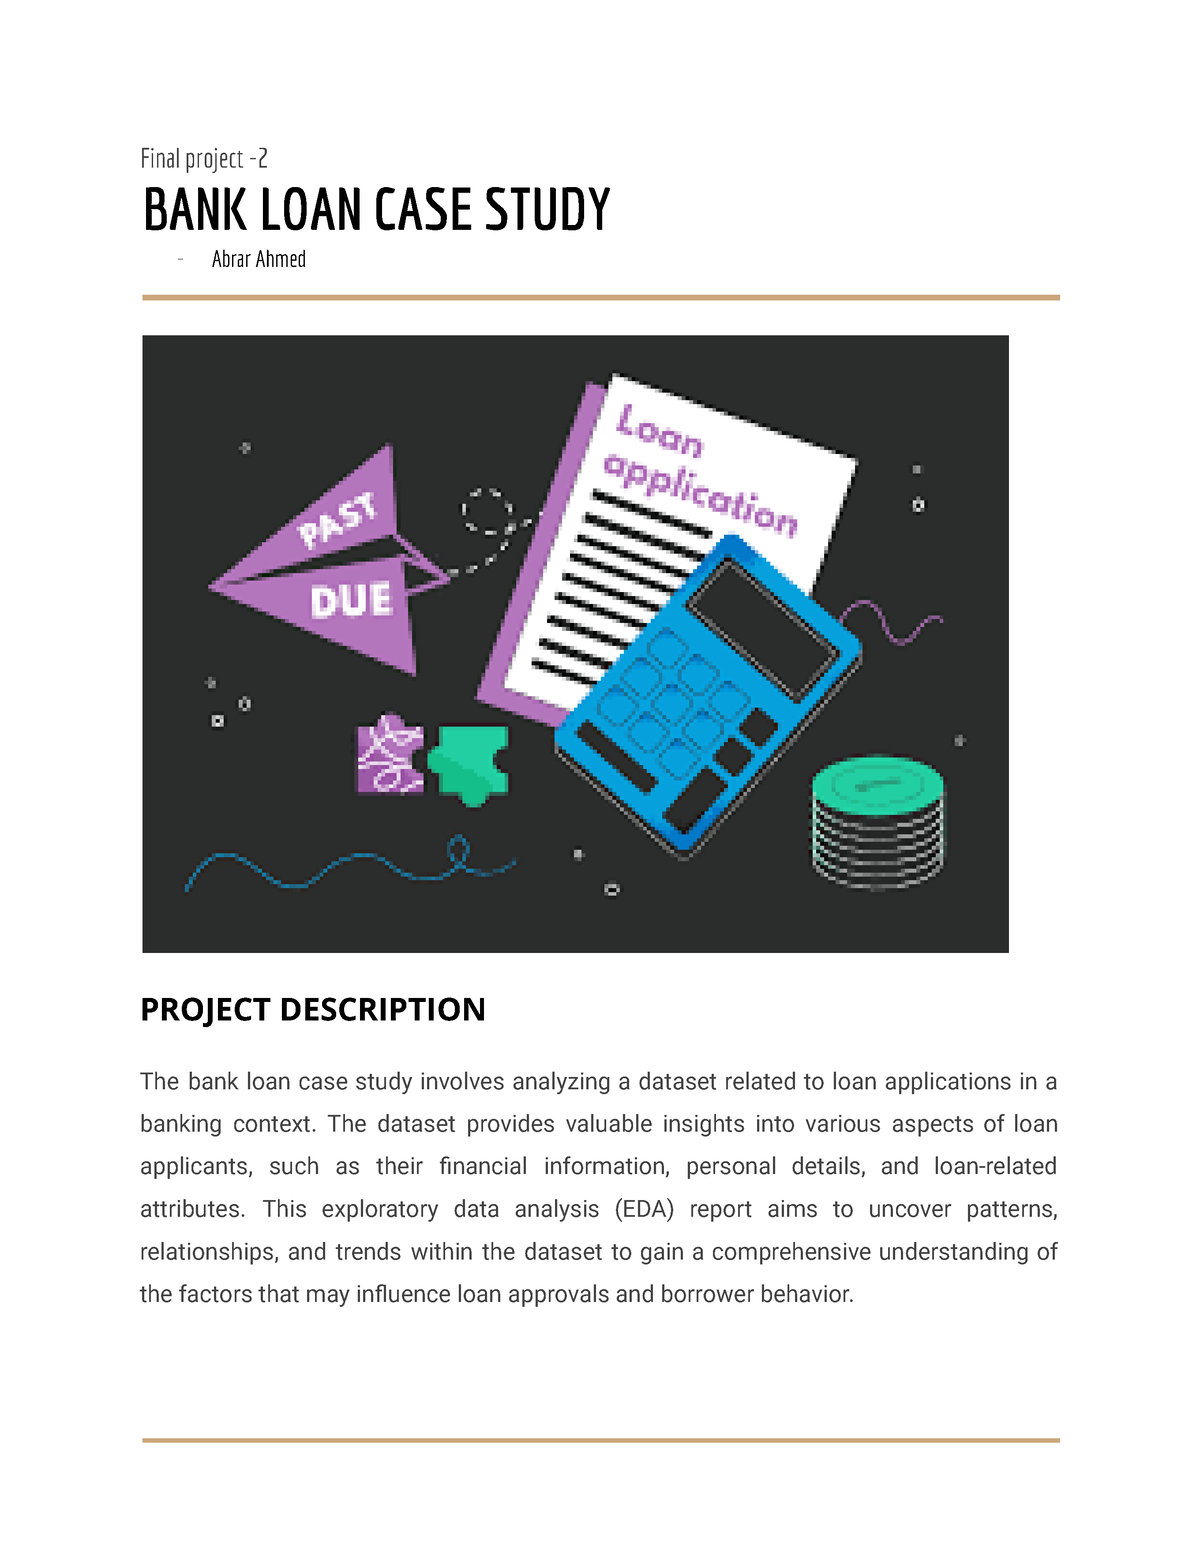 bank loan case study final project 2